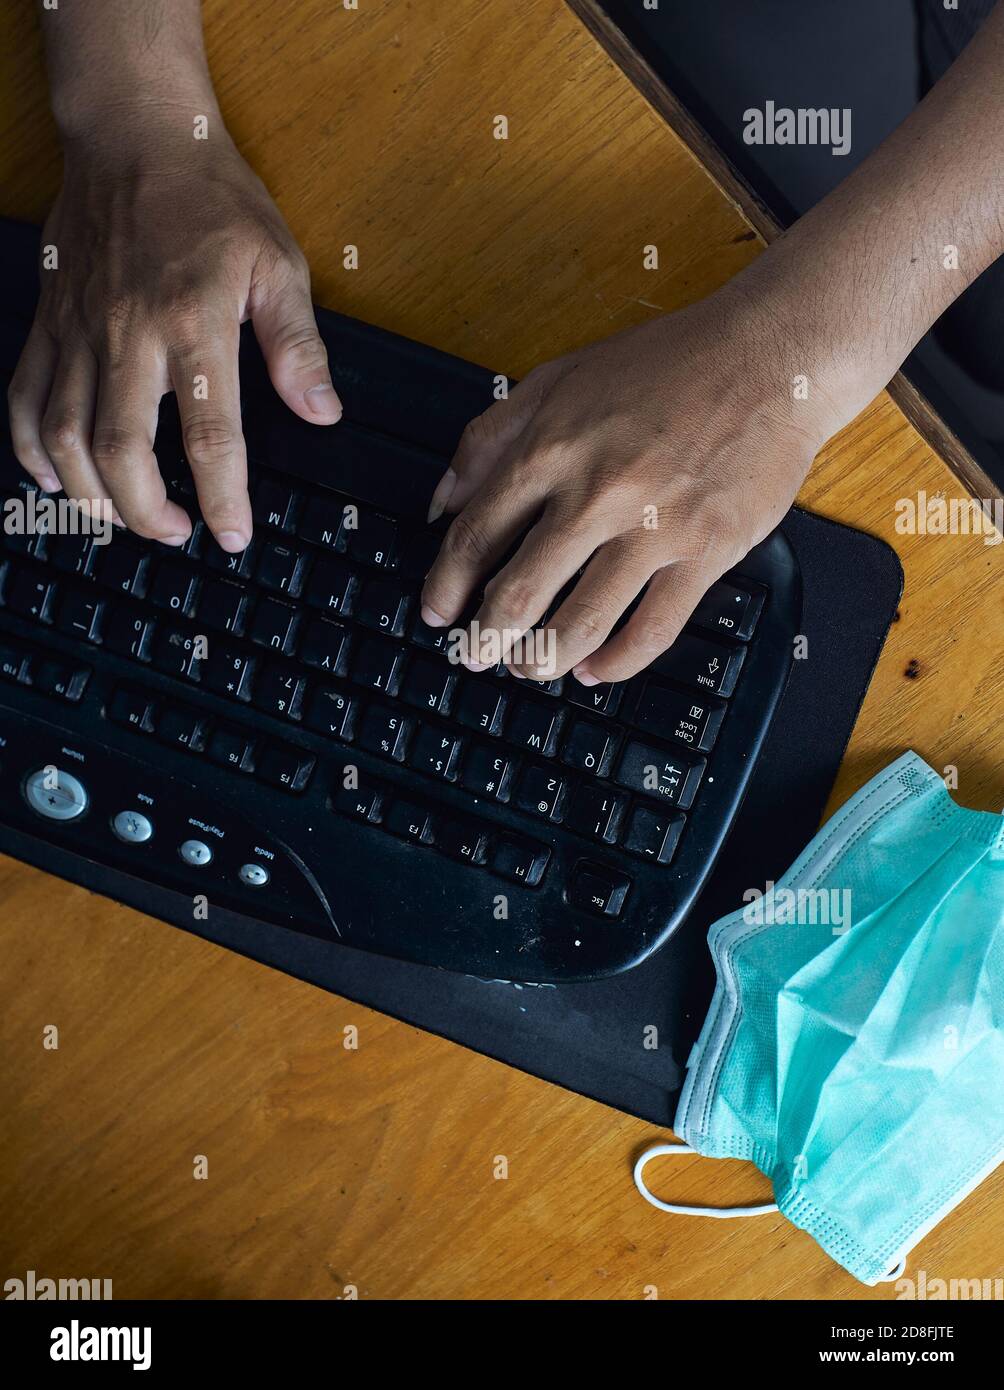 primo piano di mano uomo che digita sulla tastiera con maschera medica per la prevenzione durante la pandemia del virus corona. immagine vista dall'alto Foto Stock